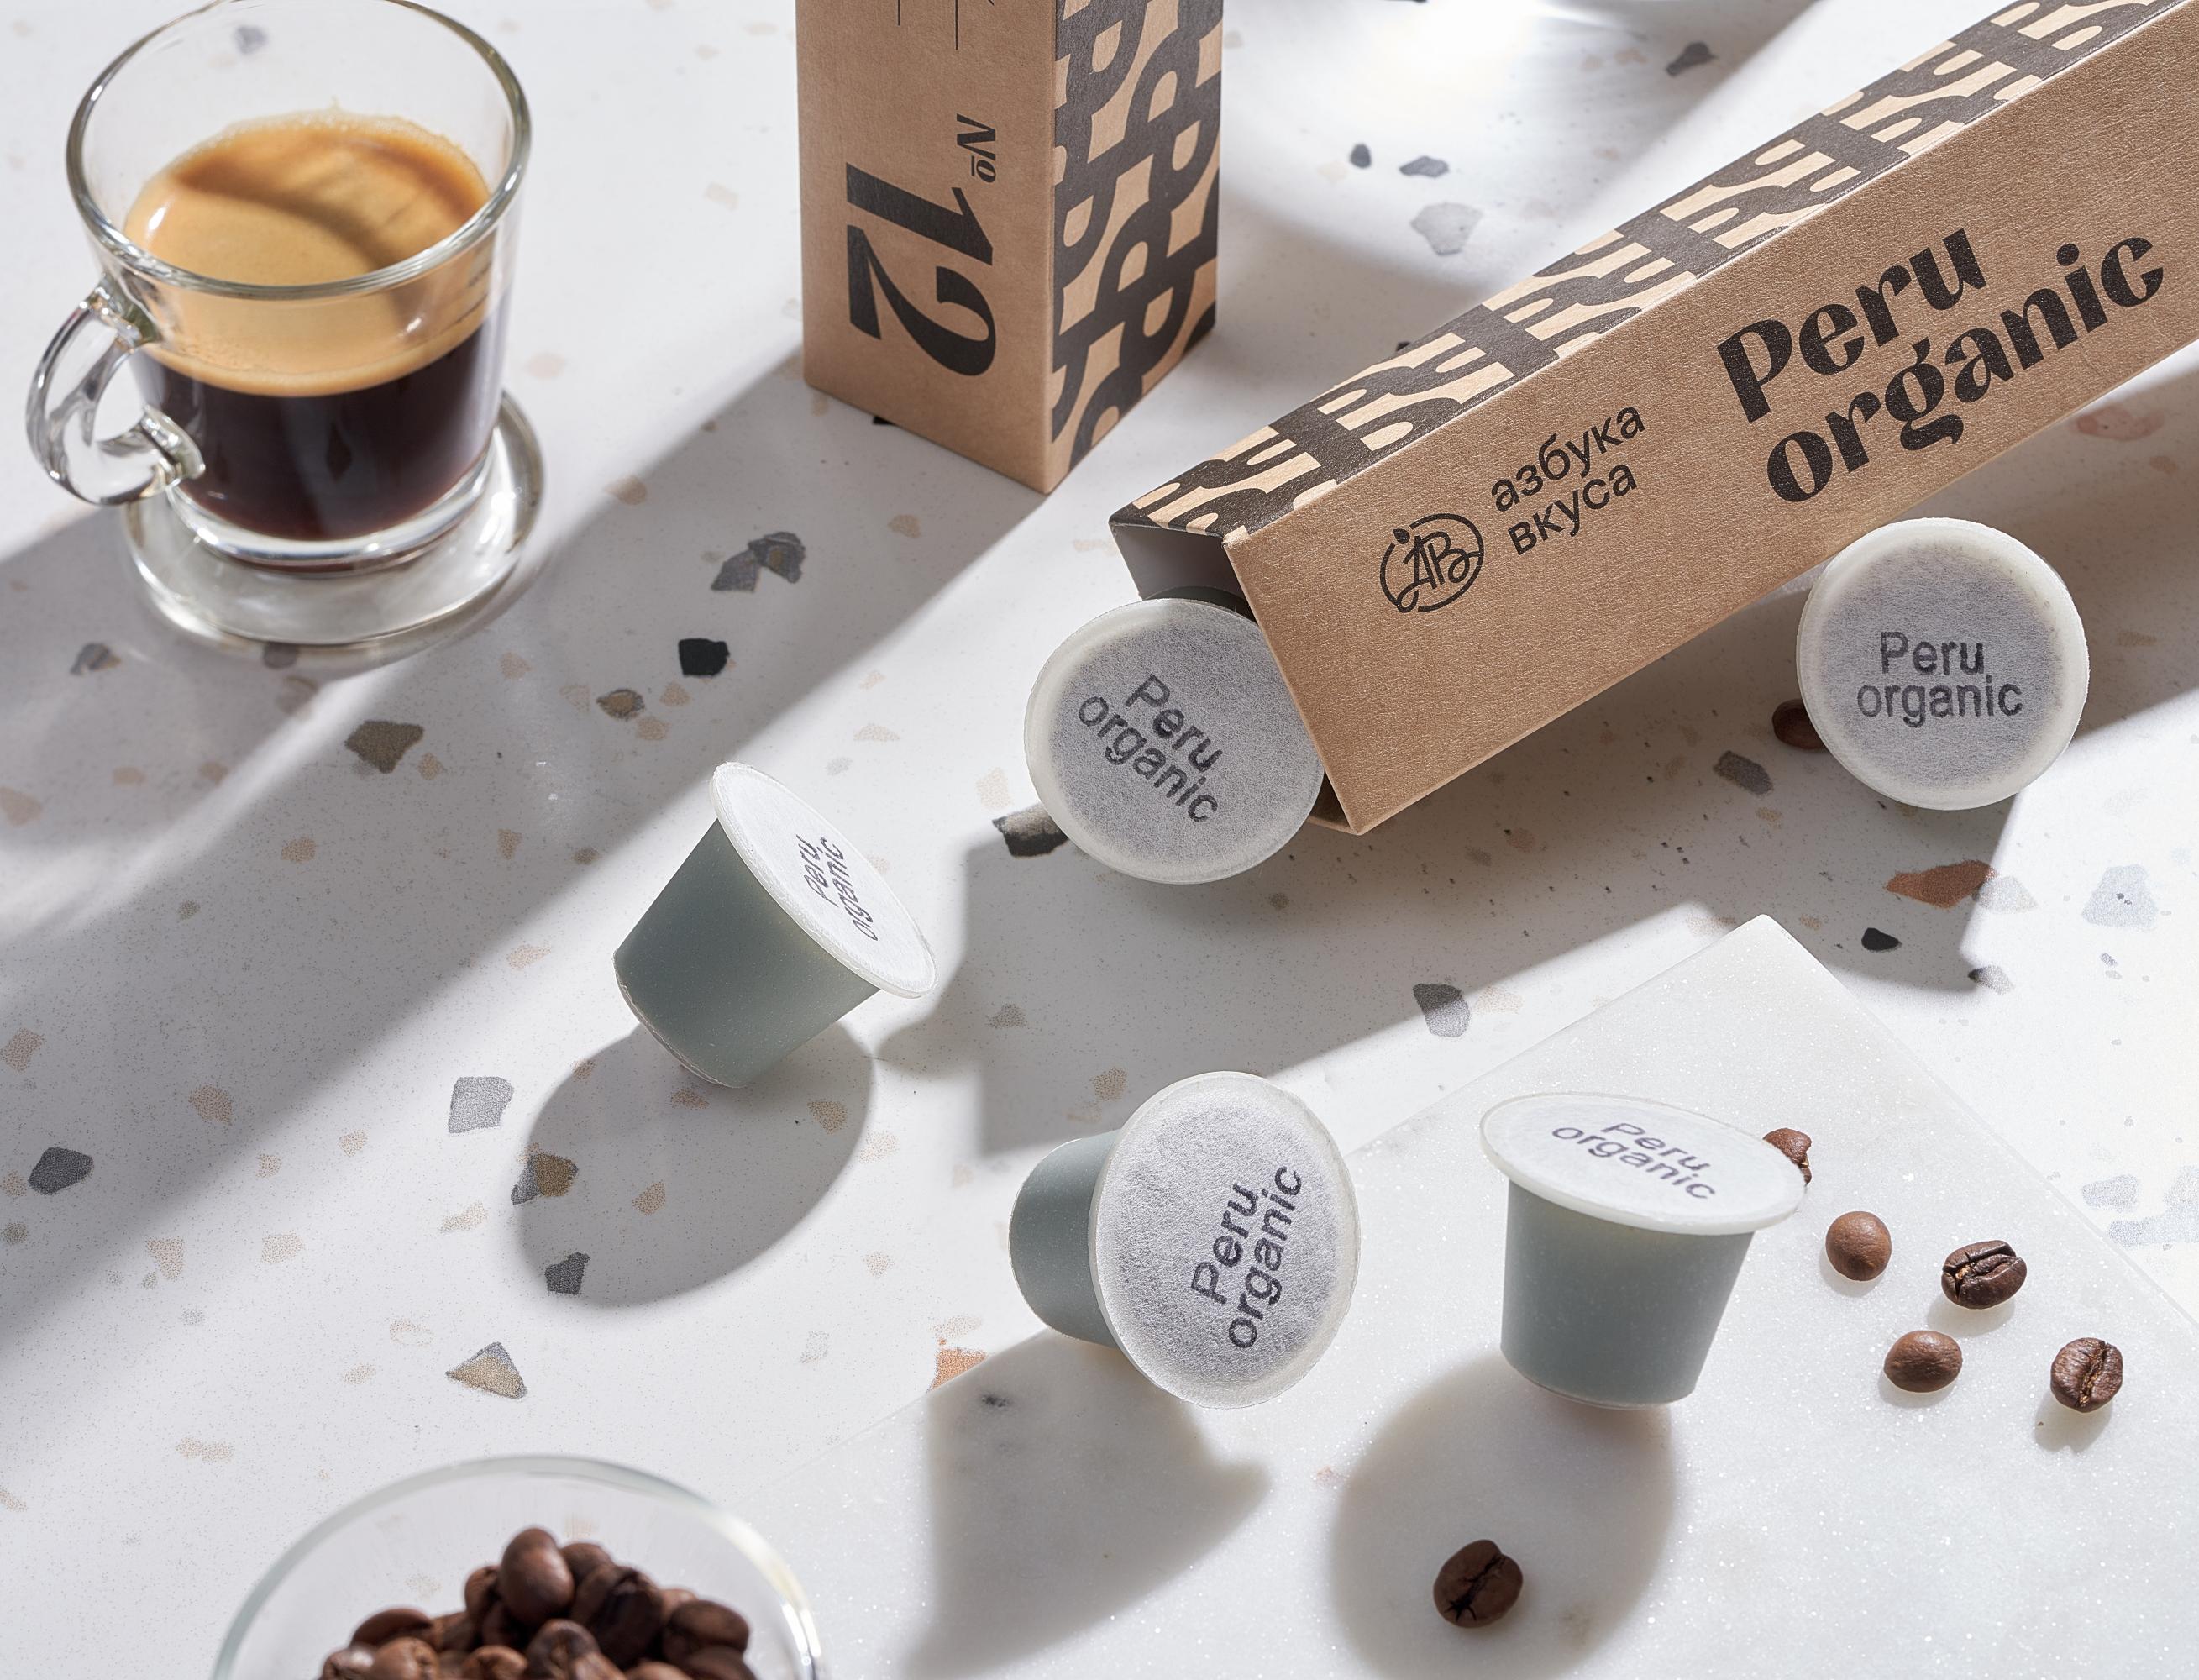 Биоразлагаемые кофейные капсулы «Азбука вкуса» получили награду за лучшую упаковку